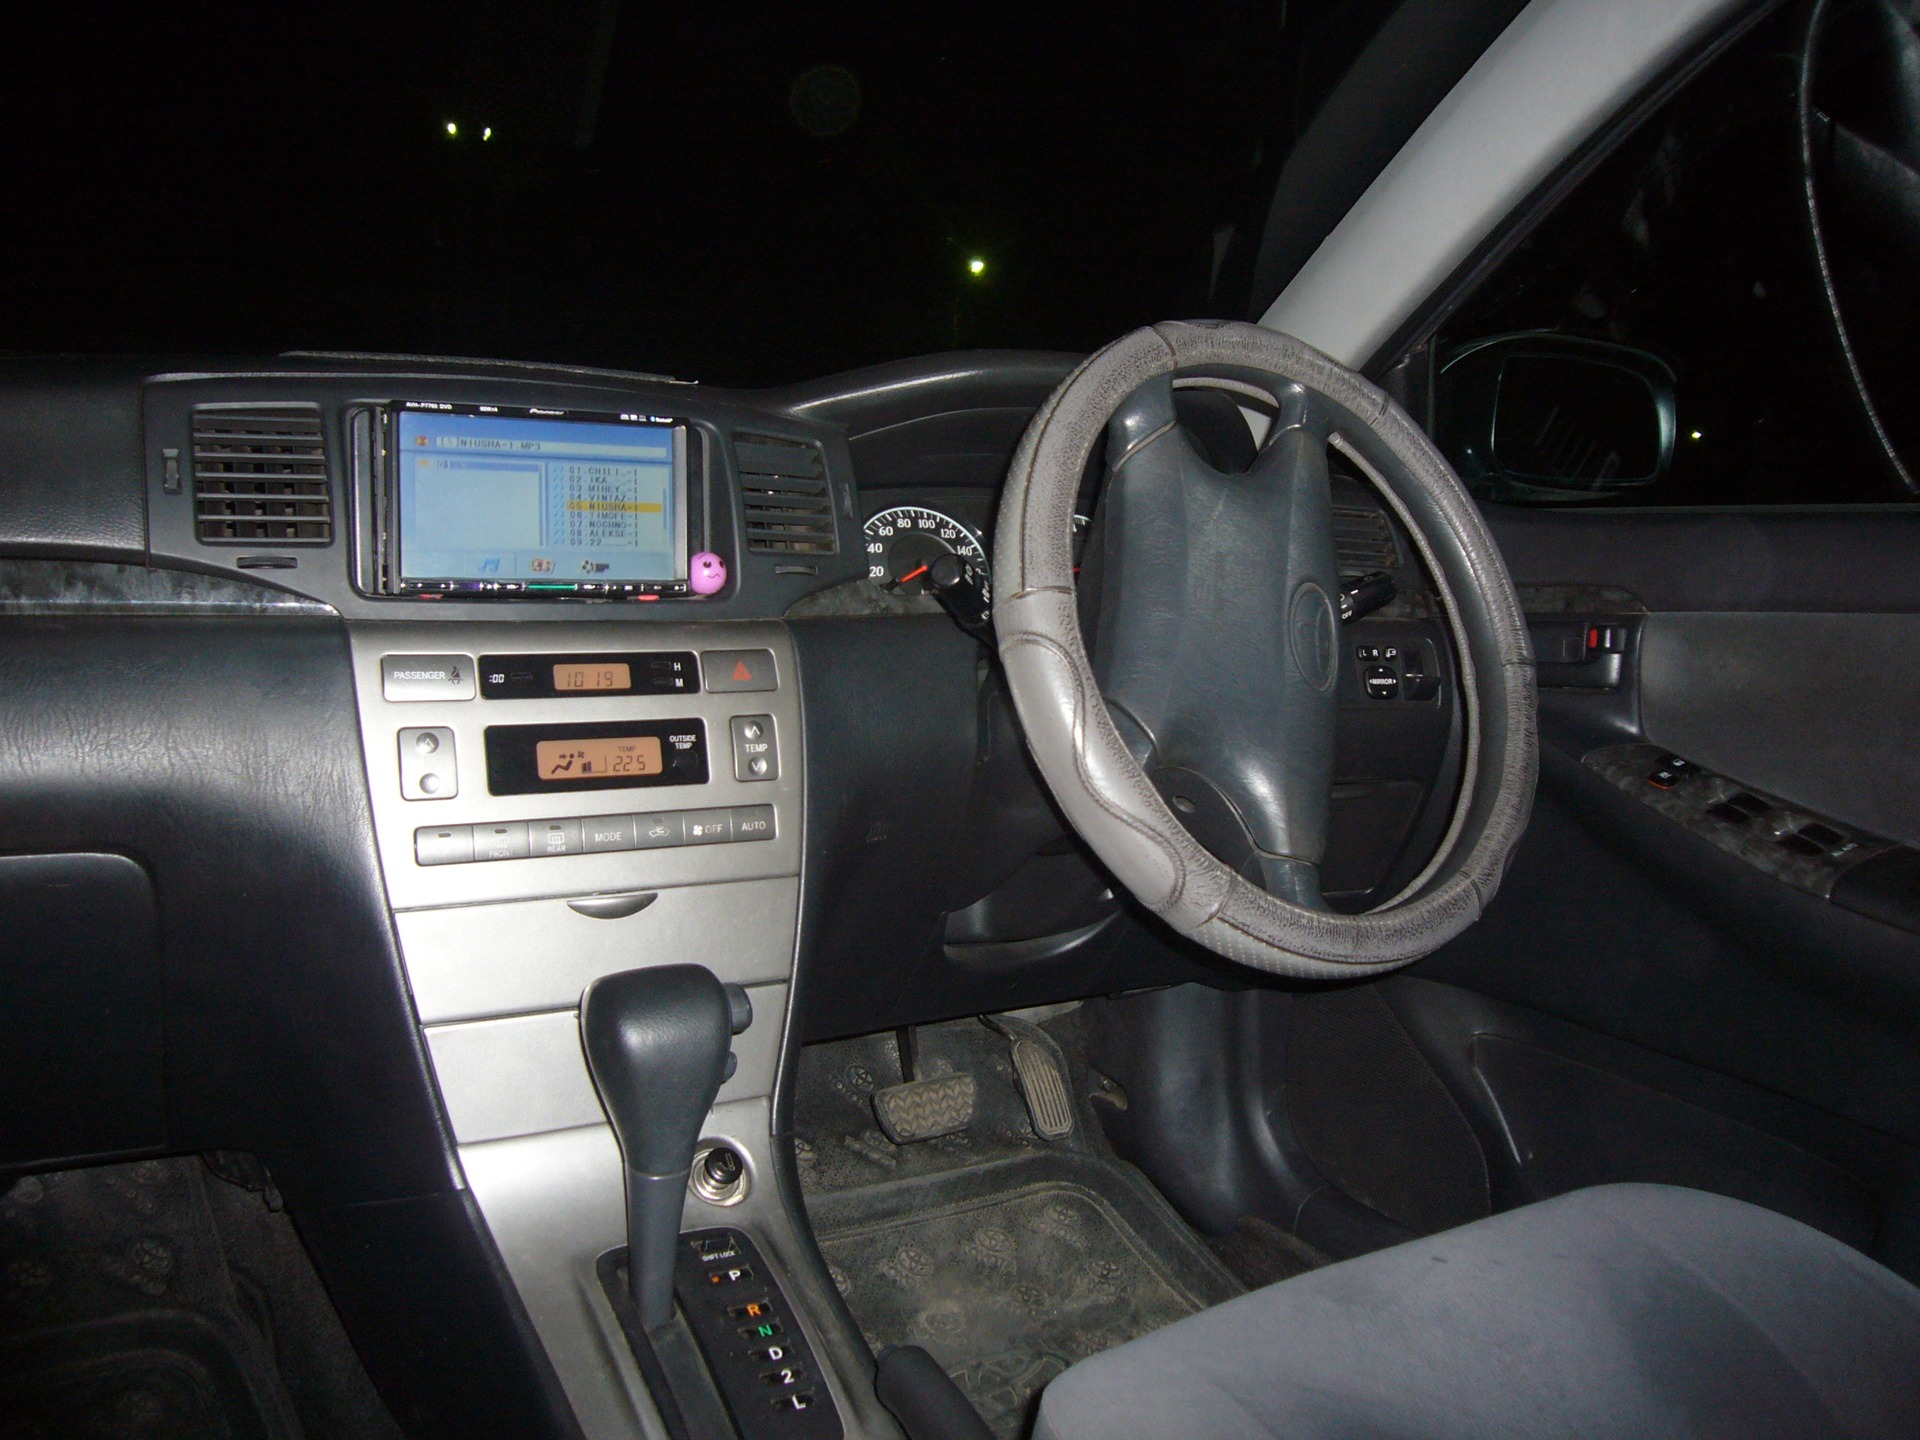        Toyota Corolla Fielder 15 2005 